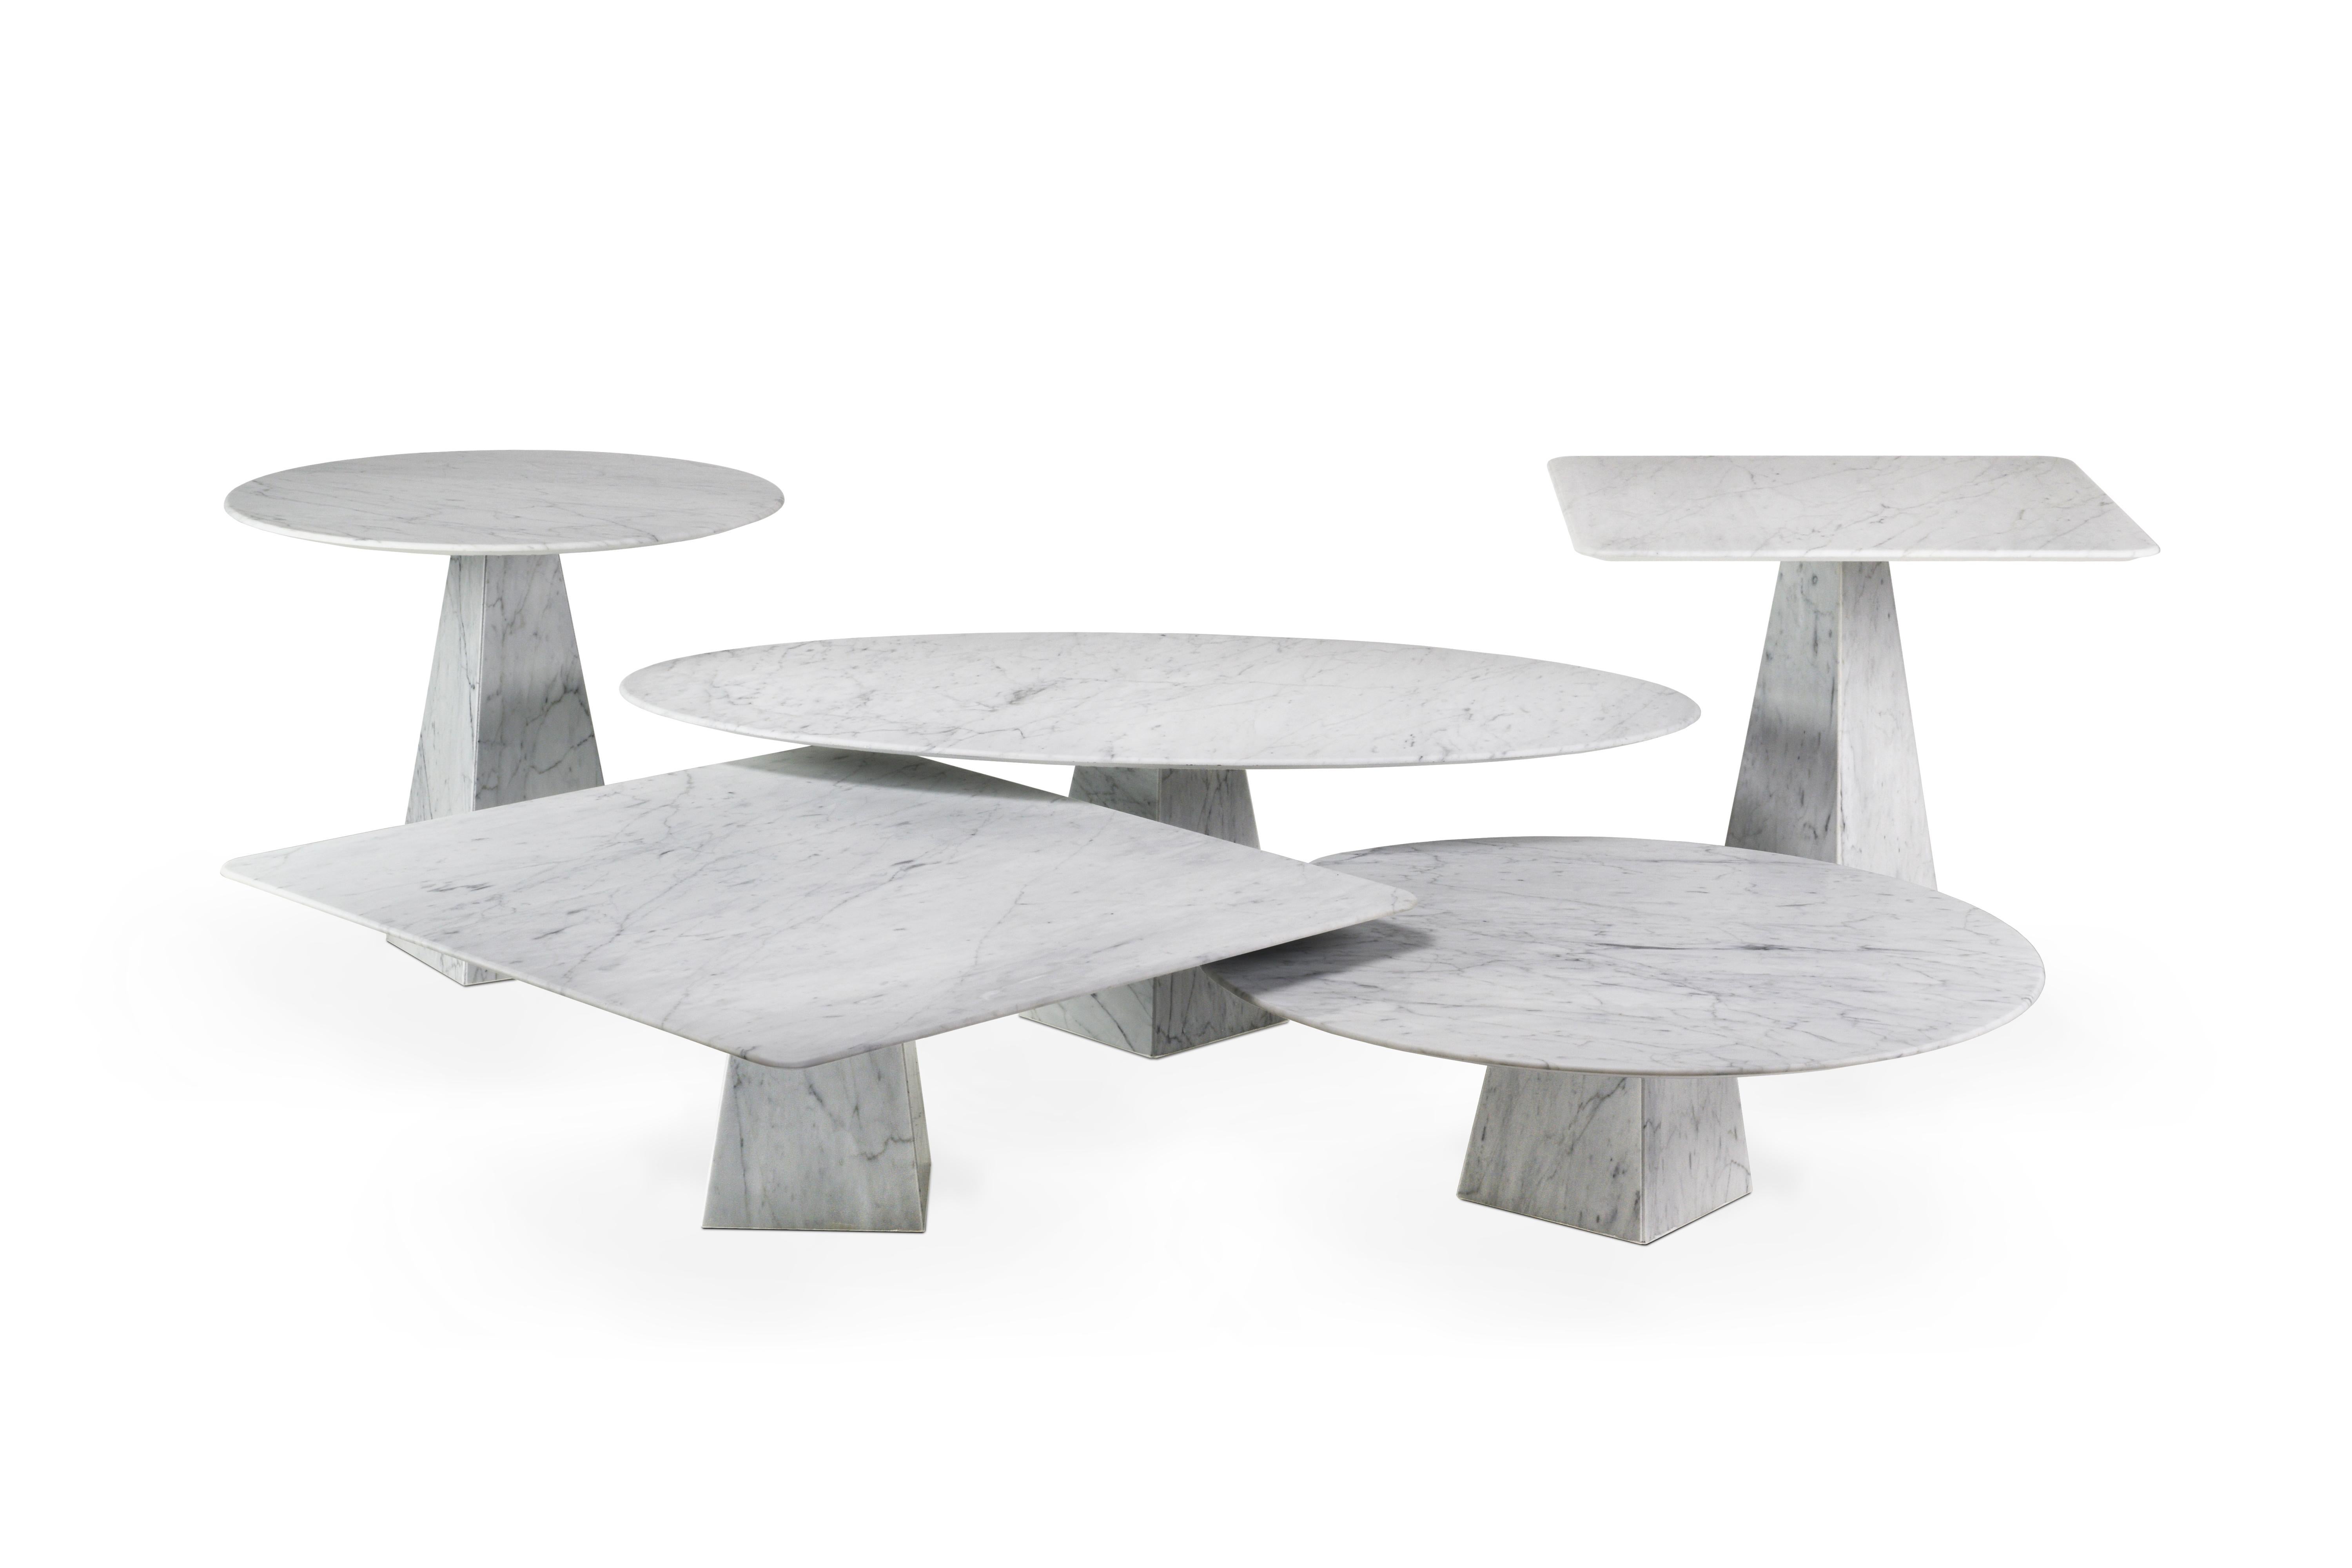 Inspiré par la sensation d'apesanteur et son lien avec l'espace, entièrement réalisé en pierre stratifiée.
Cette technique avancée nous permet d'obtenir un plateau de table en marbre ultra-fin et très résistant. Les tables sont légères, simples,